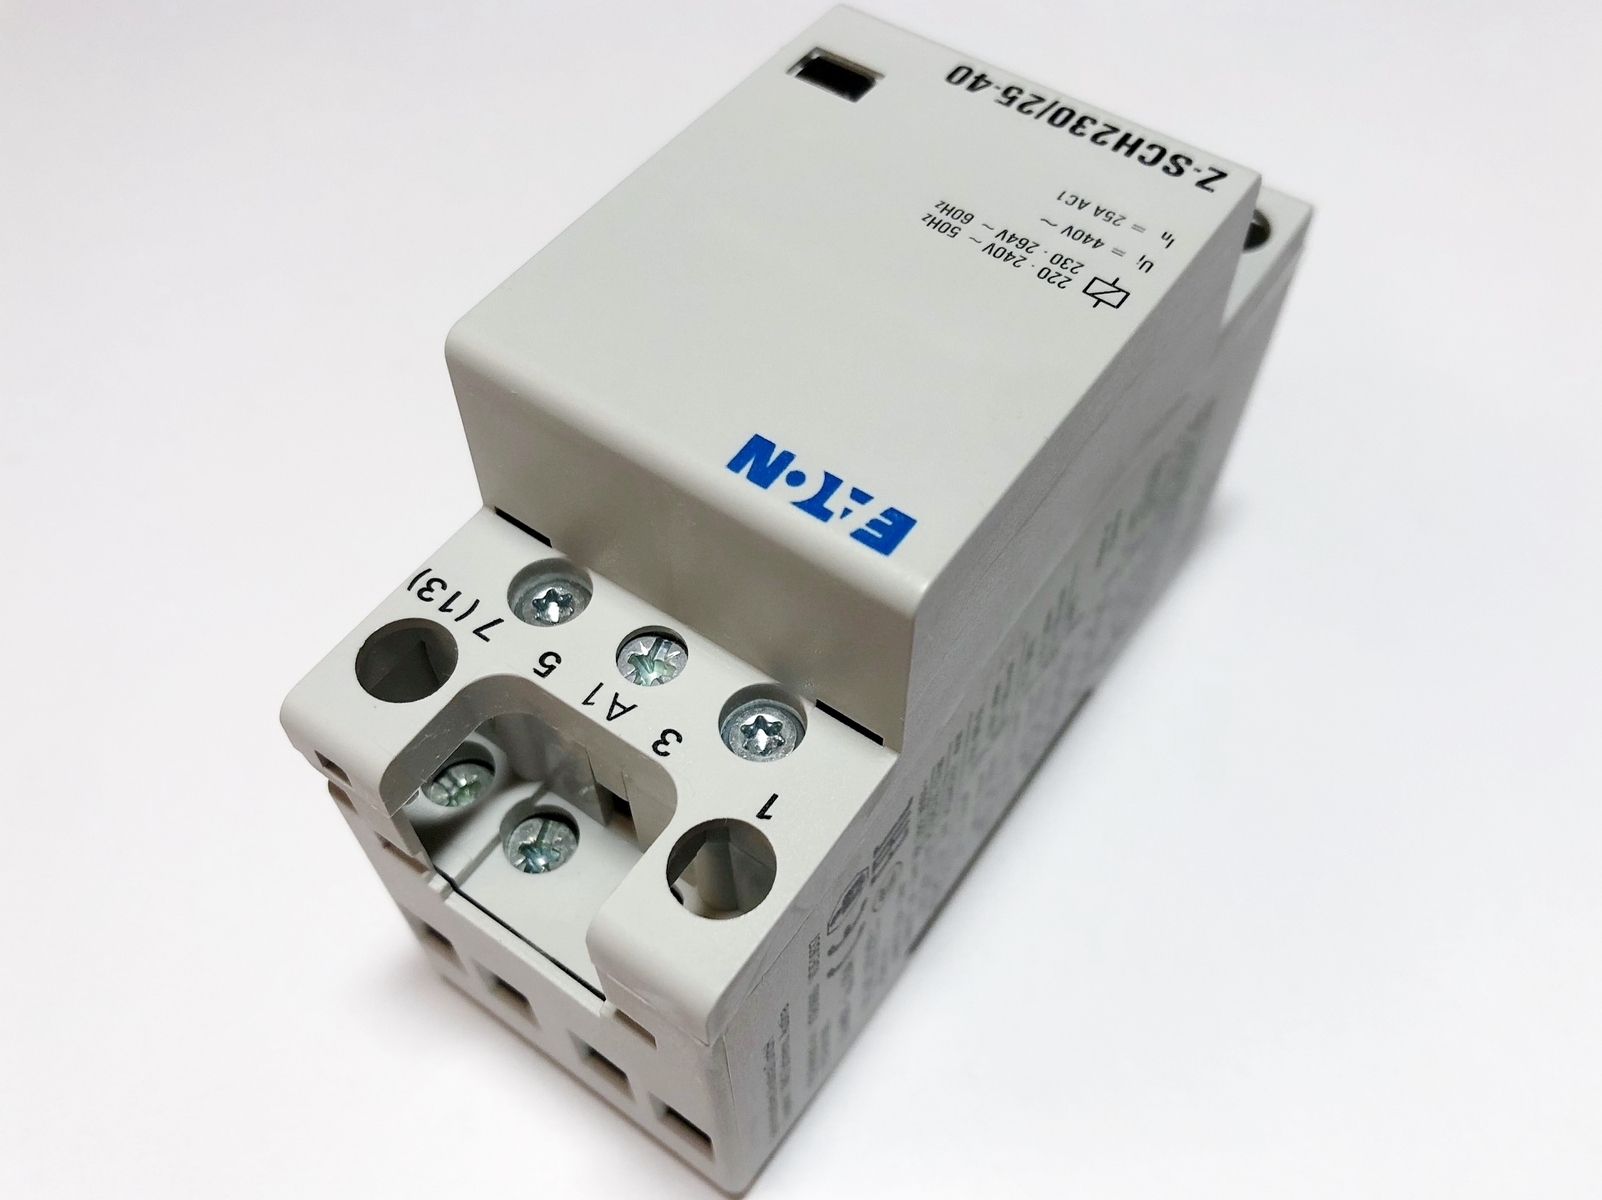 Модульный контактор 3-фазный 25A(17кВт) - 10€, Z-SCH230/25-40, Eaton .